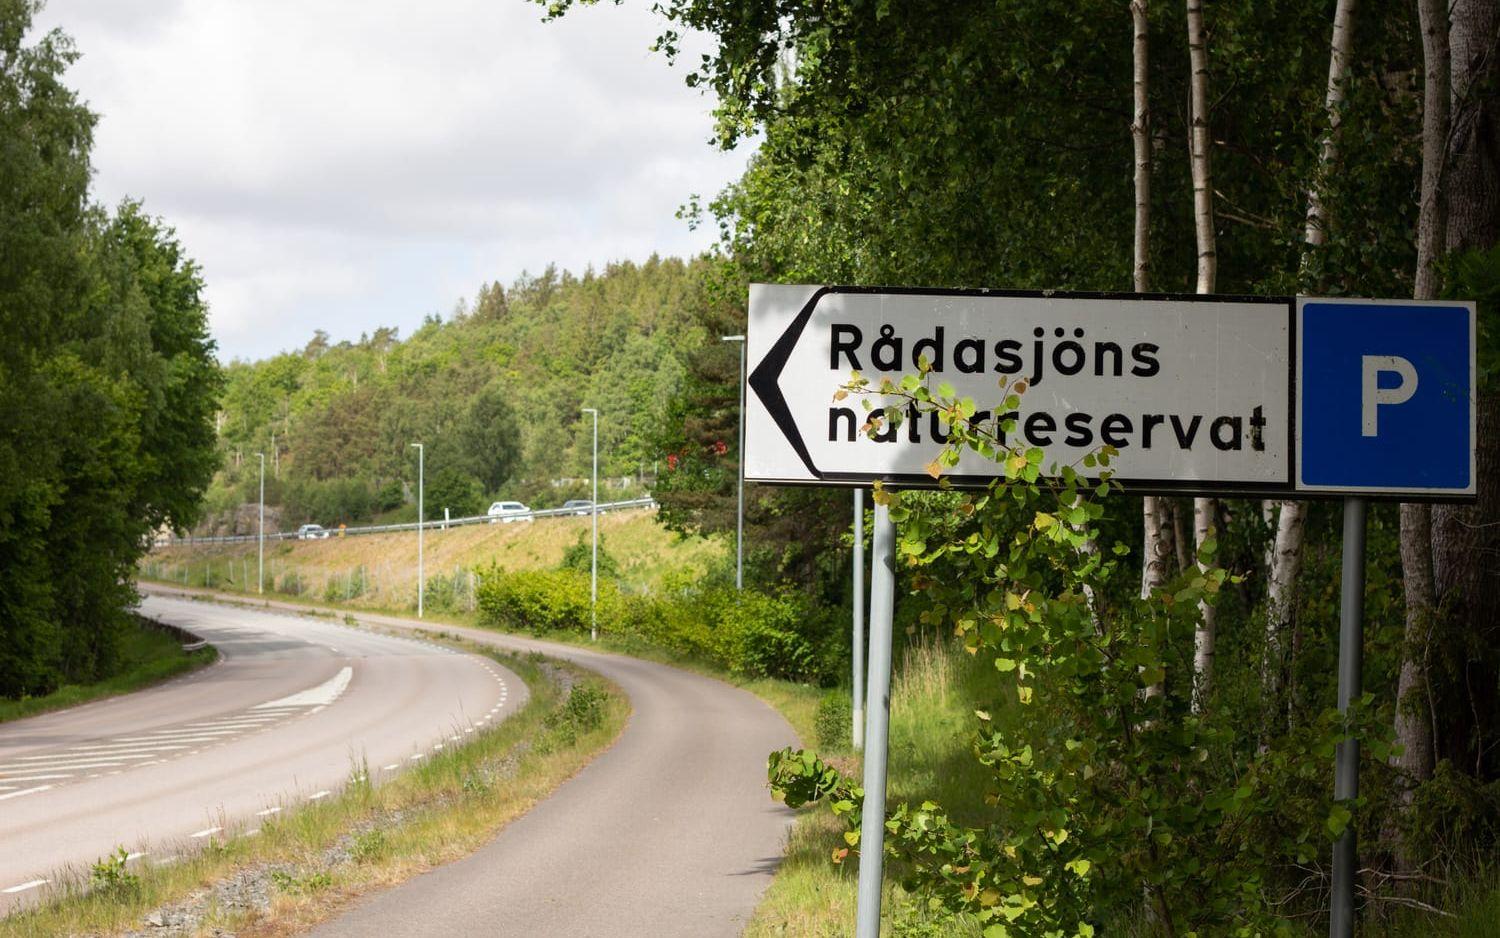 Soptunnorna står vid Boråsvägen och nära riksväg 40 där många passerar. 